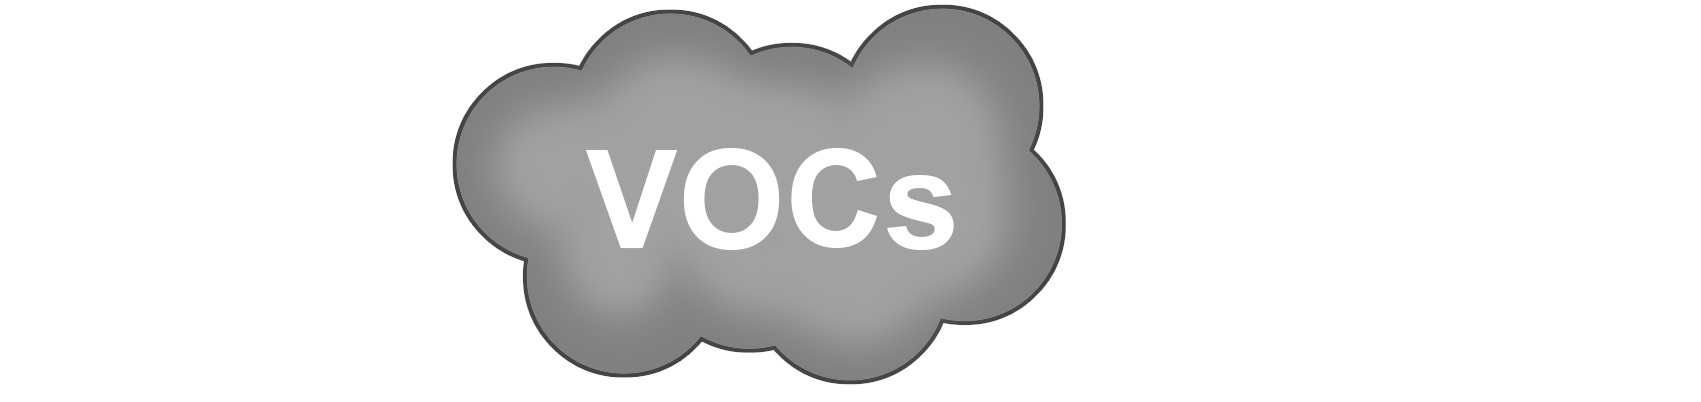 VOC dan Kualitas Udara Dalam Ruangan